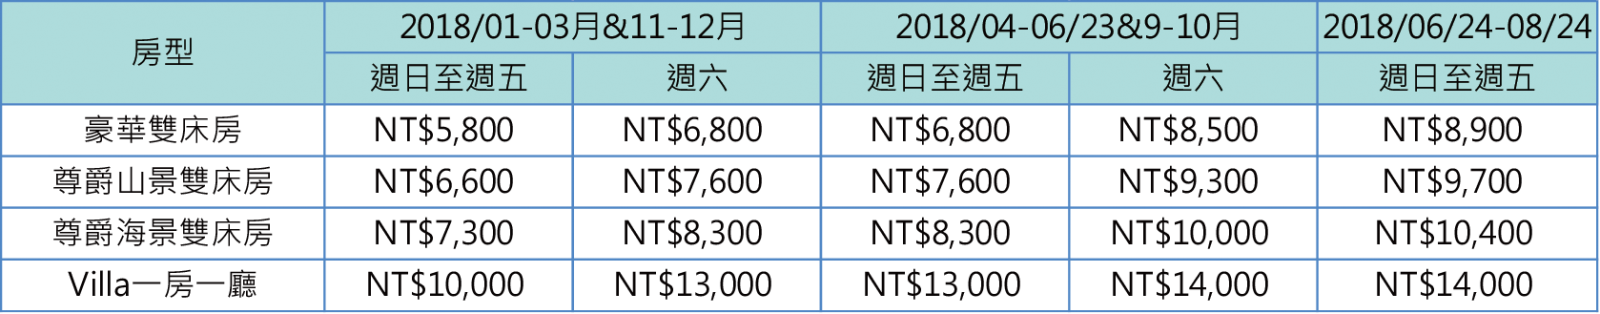 KT-美國運通2018(1)